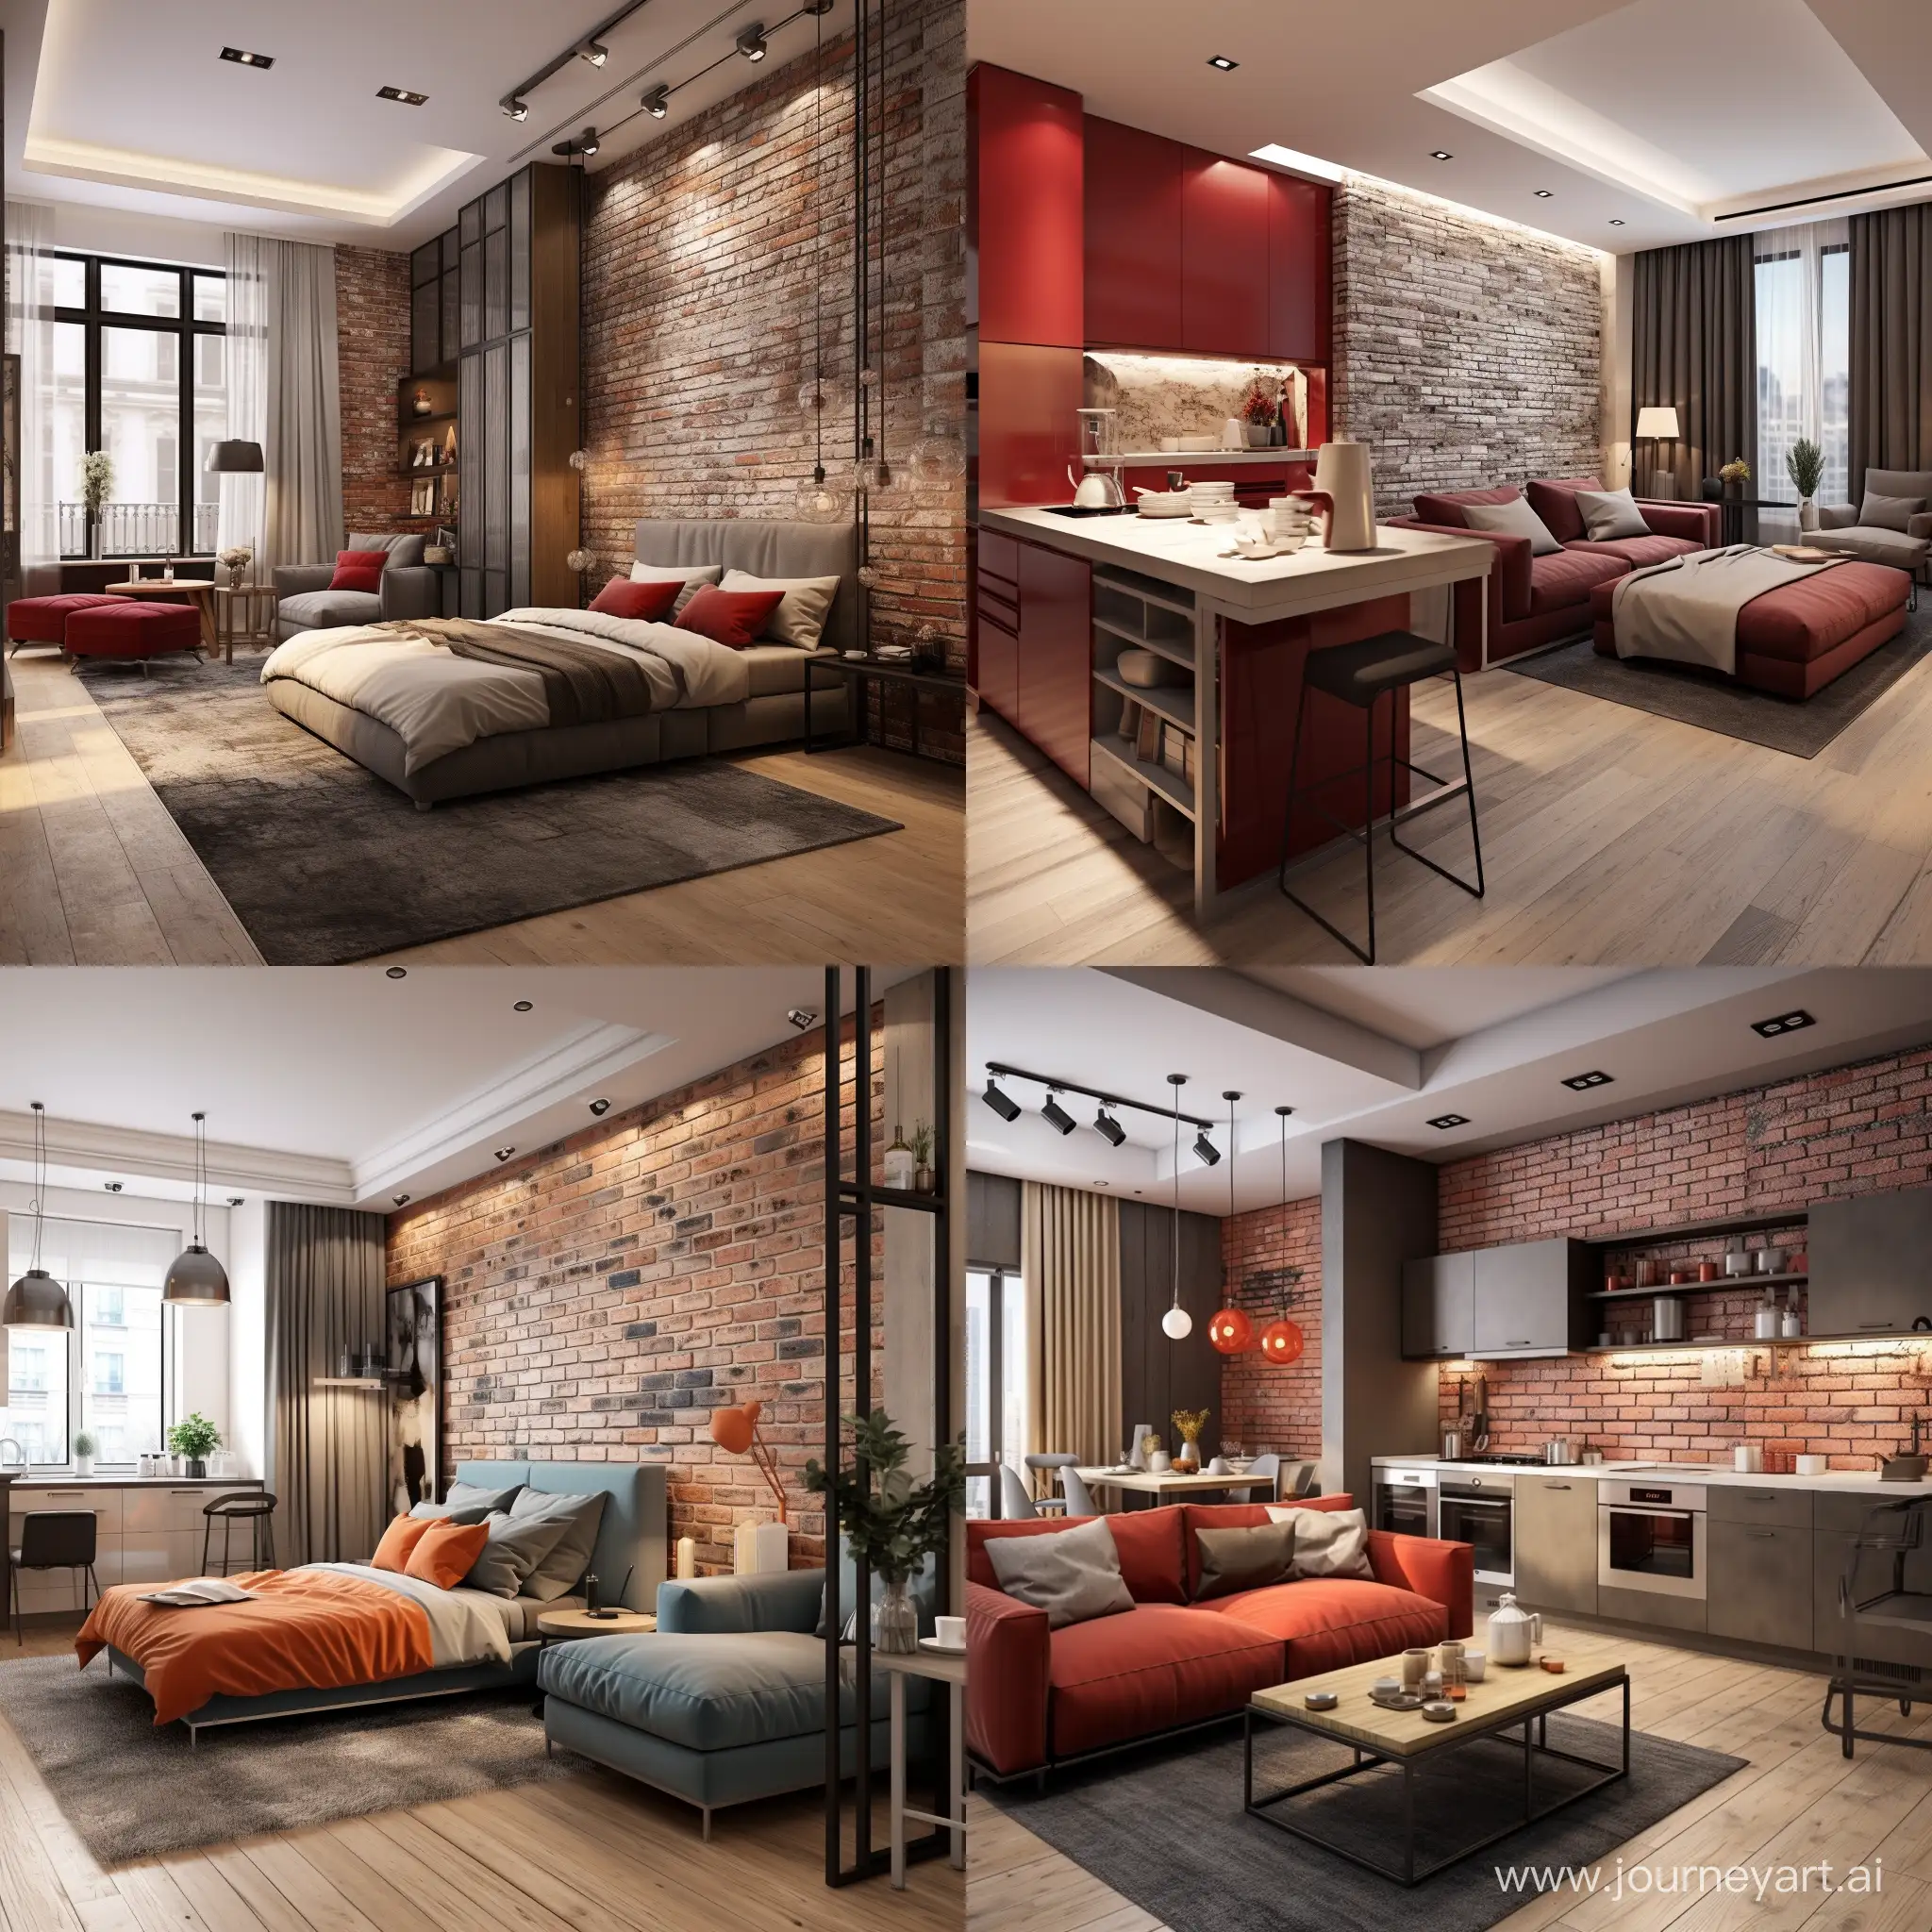 Дизайн квартиры студии с применением искусственного камня и отделкой стен имитацией красного кирпича размером 7×2.8 метра